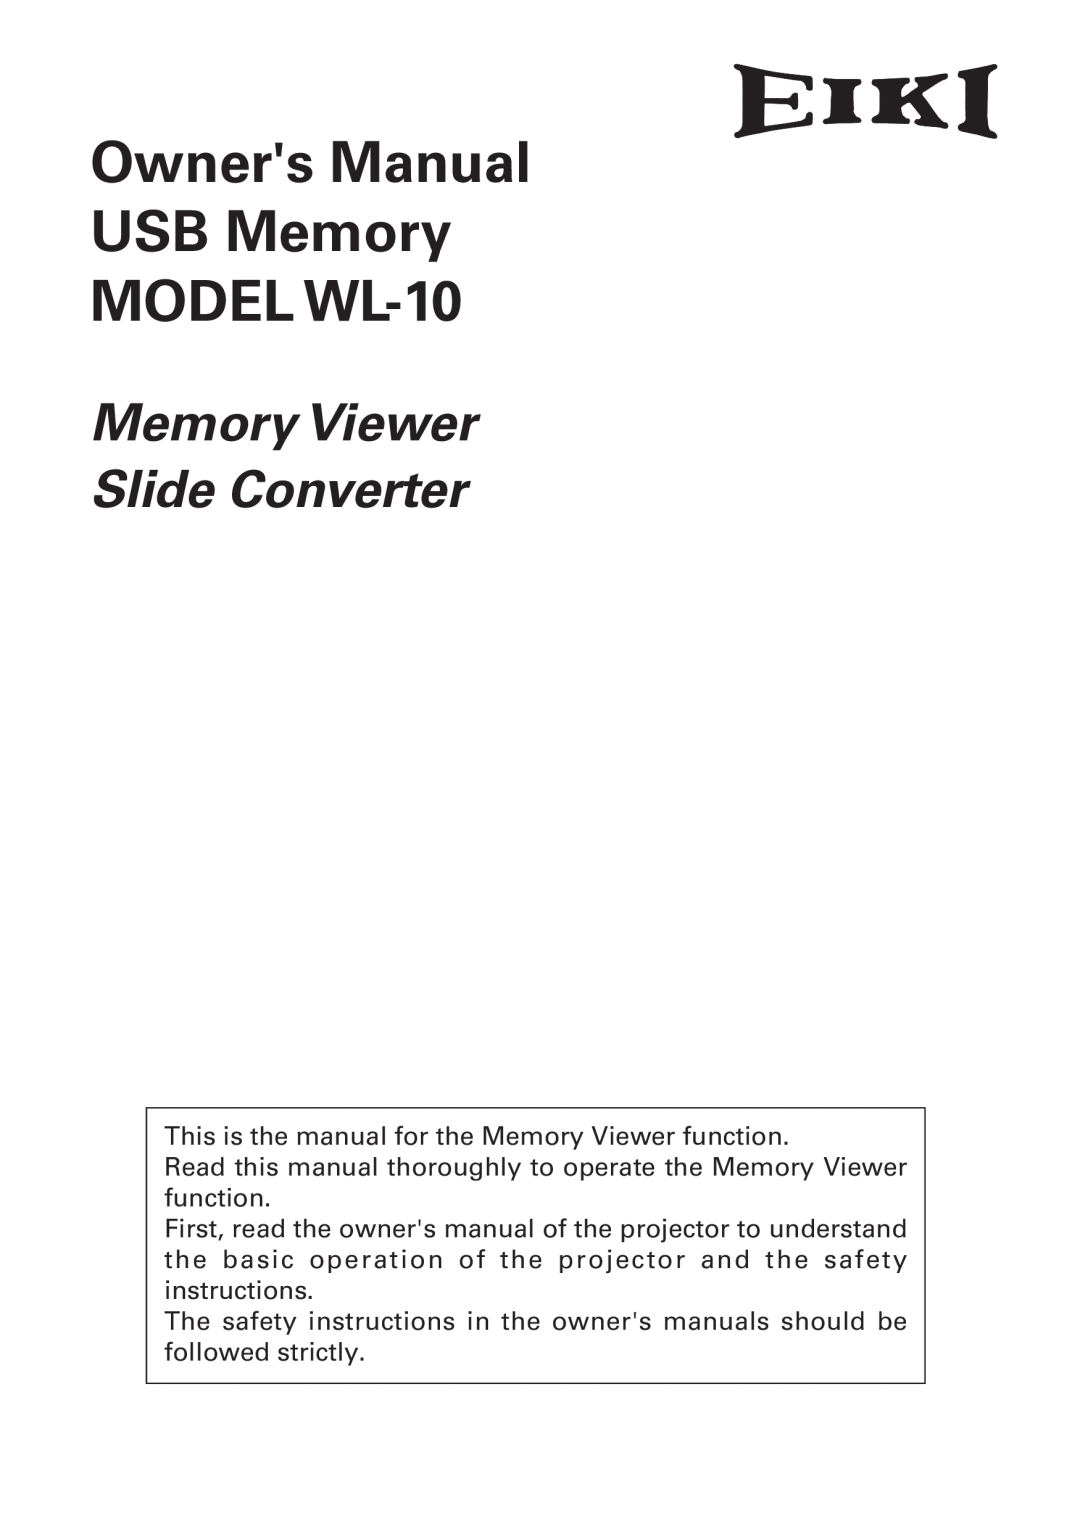 Eiki WL-10 owner manual Memory Viewer Slide Converter 